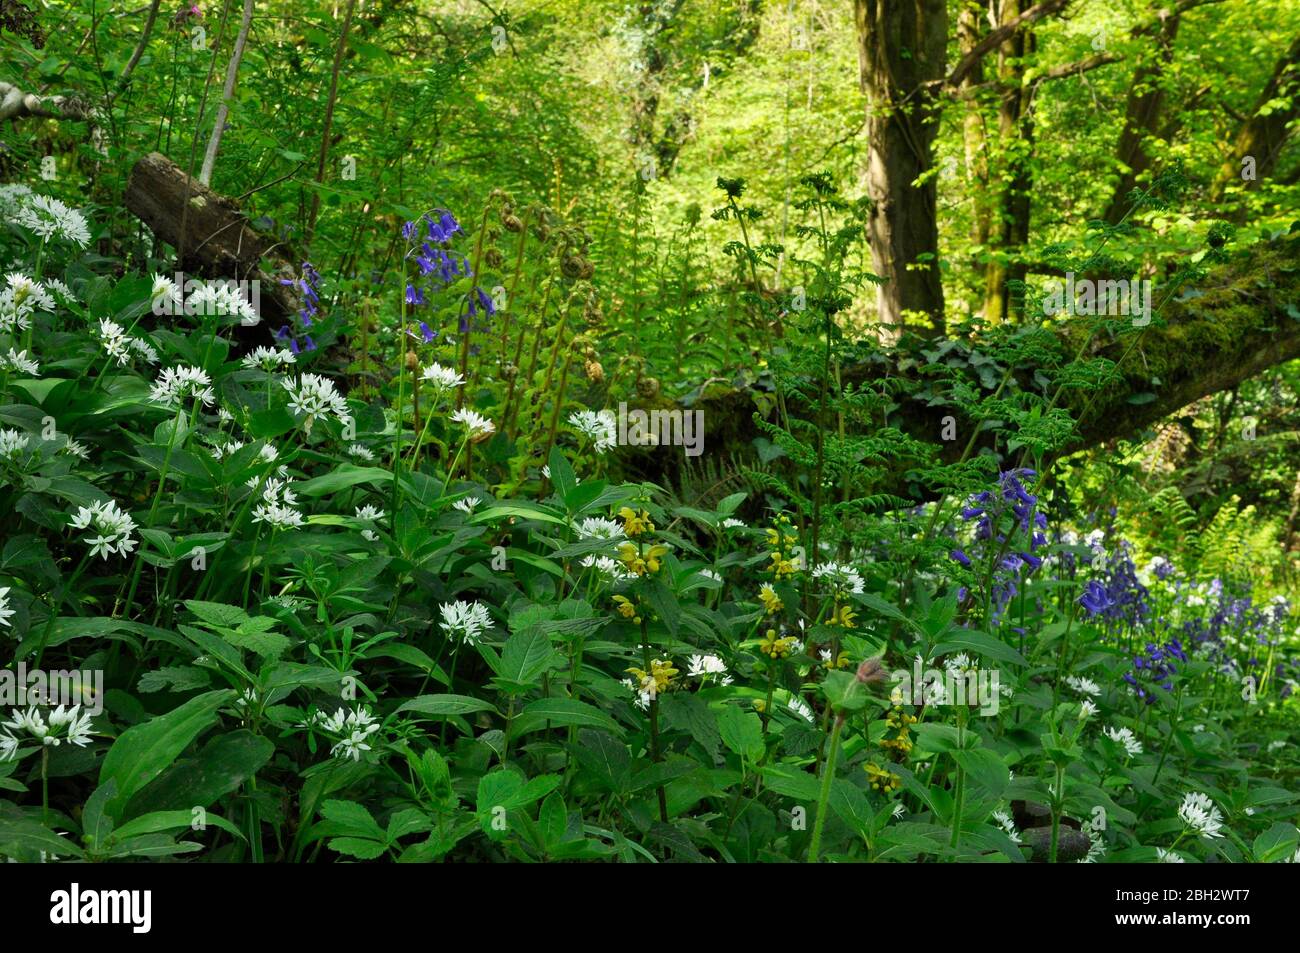 Damp woodland bank in spring. Bluebells (Hyacinthoides non-scripta), Wild Garlic (Allium Ursinum), Yellow archangel (Lamium galeobdolon)and ferns brig Stock Photo